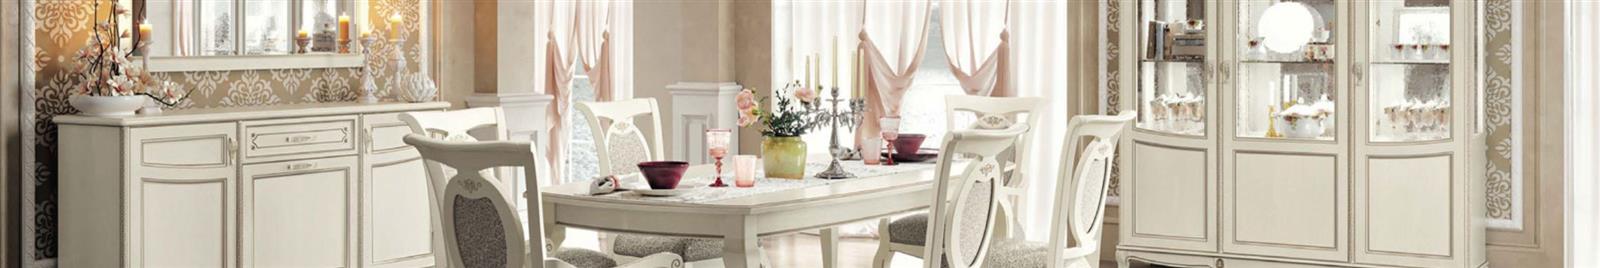 Fantasia - Antique - White - Classic Italian Dining Room Furniture